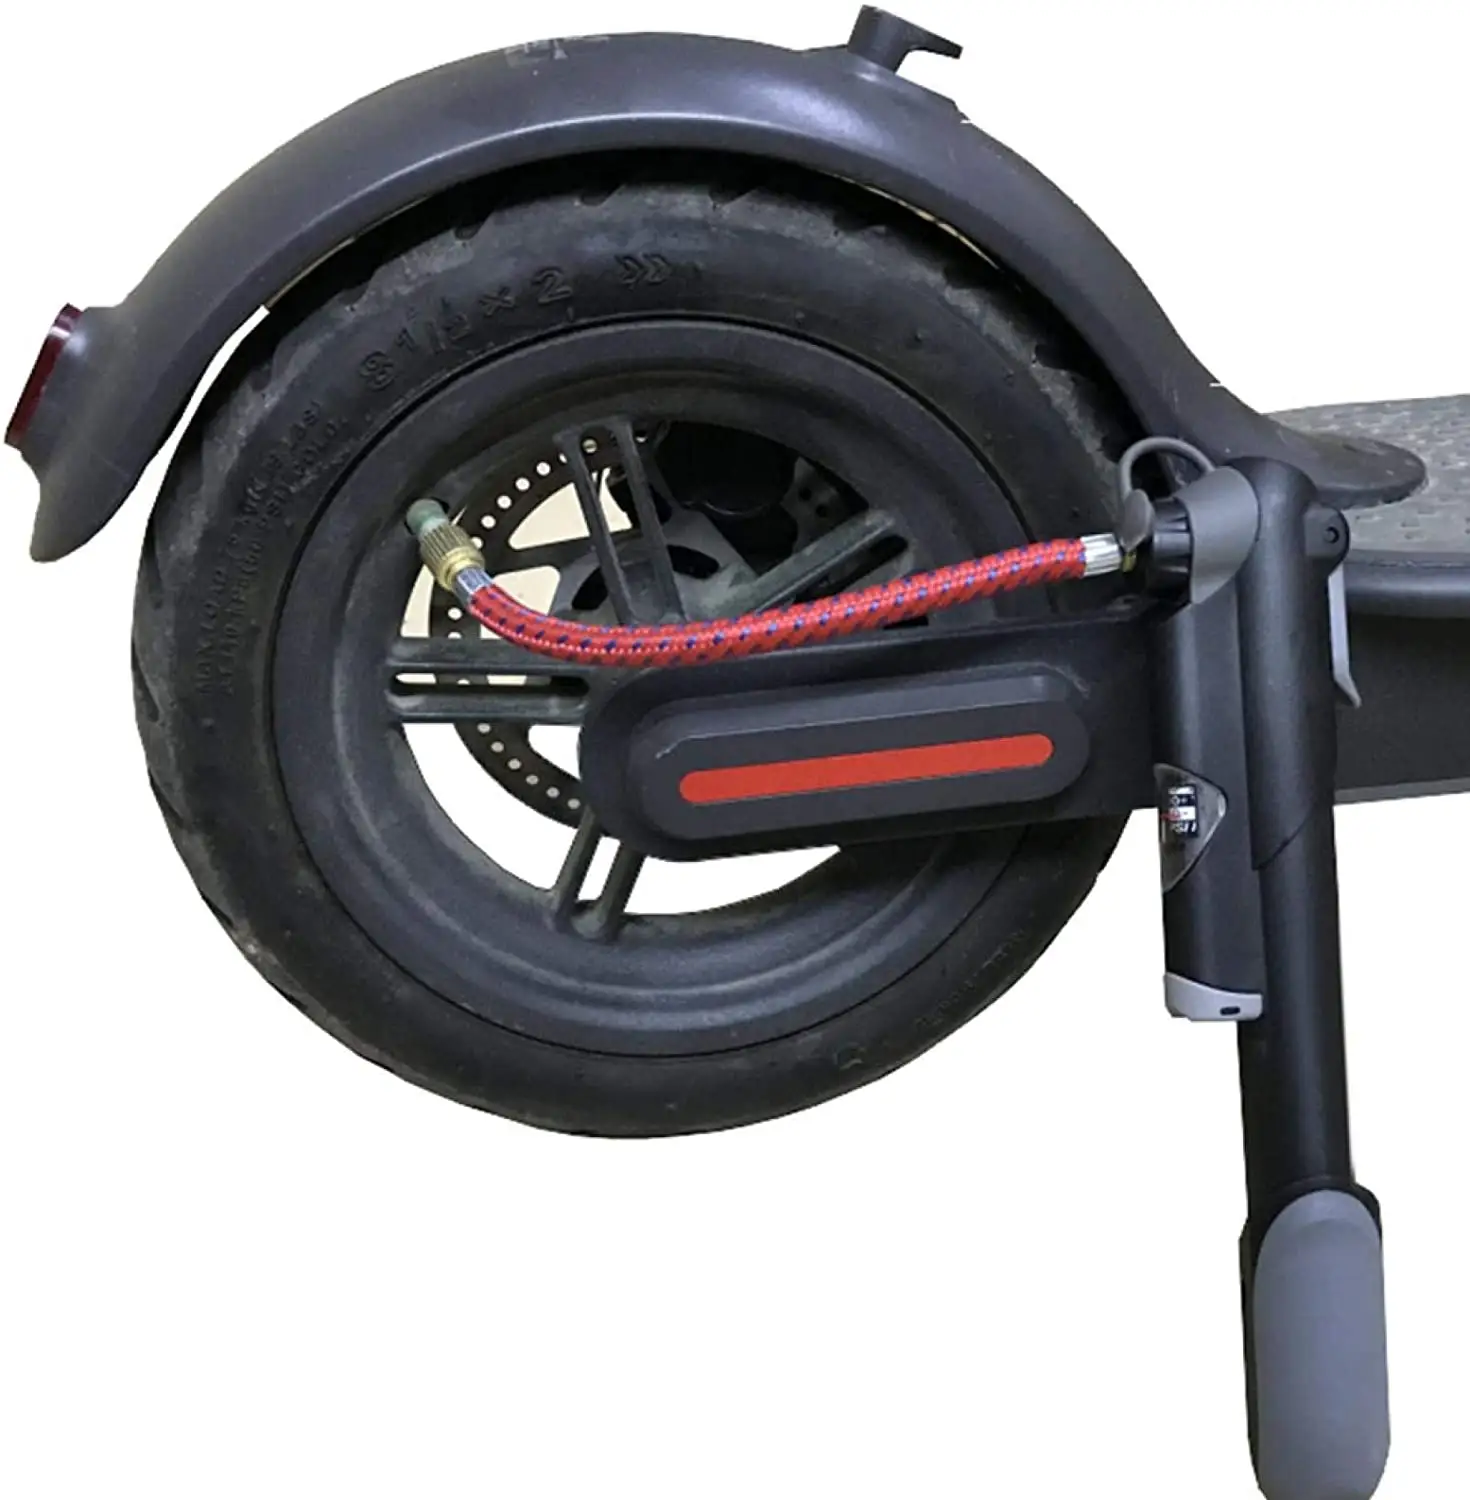 Nuova immagine pneumatico della bicicletta tubo gonfiabile ago tubo dell'aria kit adattatore strumenti di riparazione della bicicletta connettore pompa valvola di pallacanestro